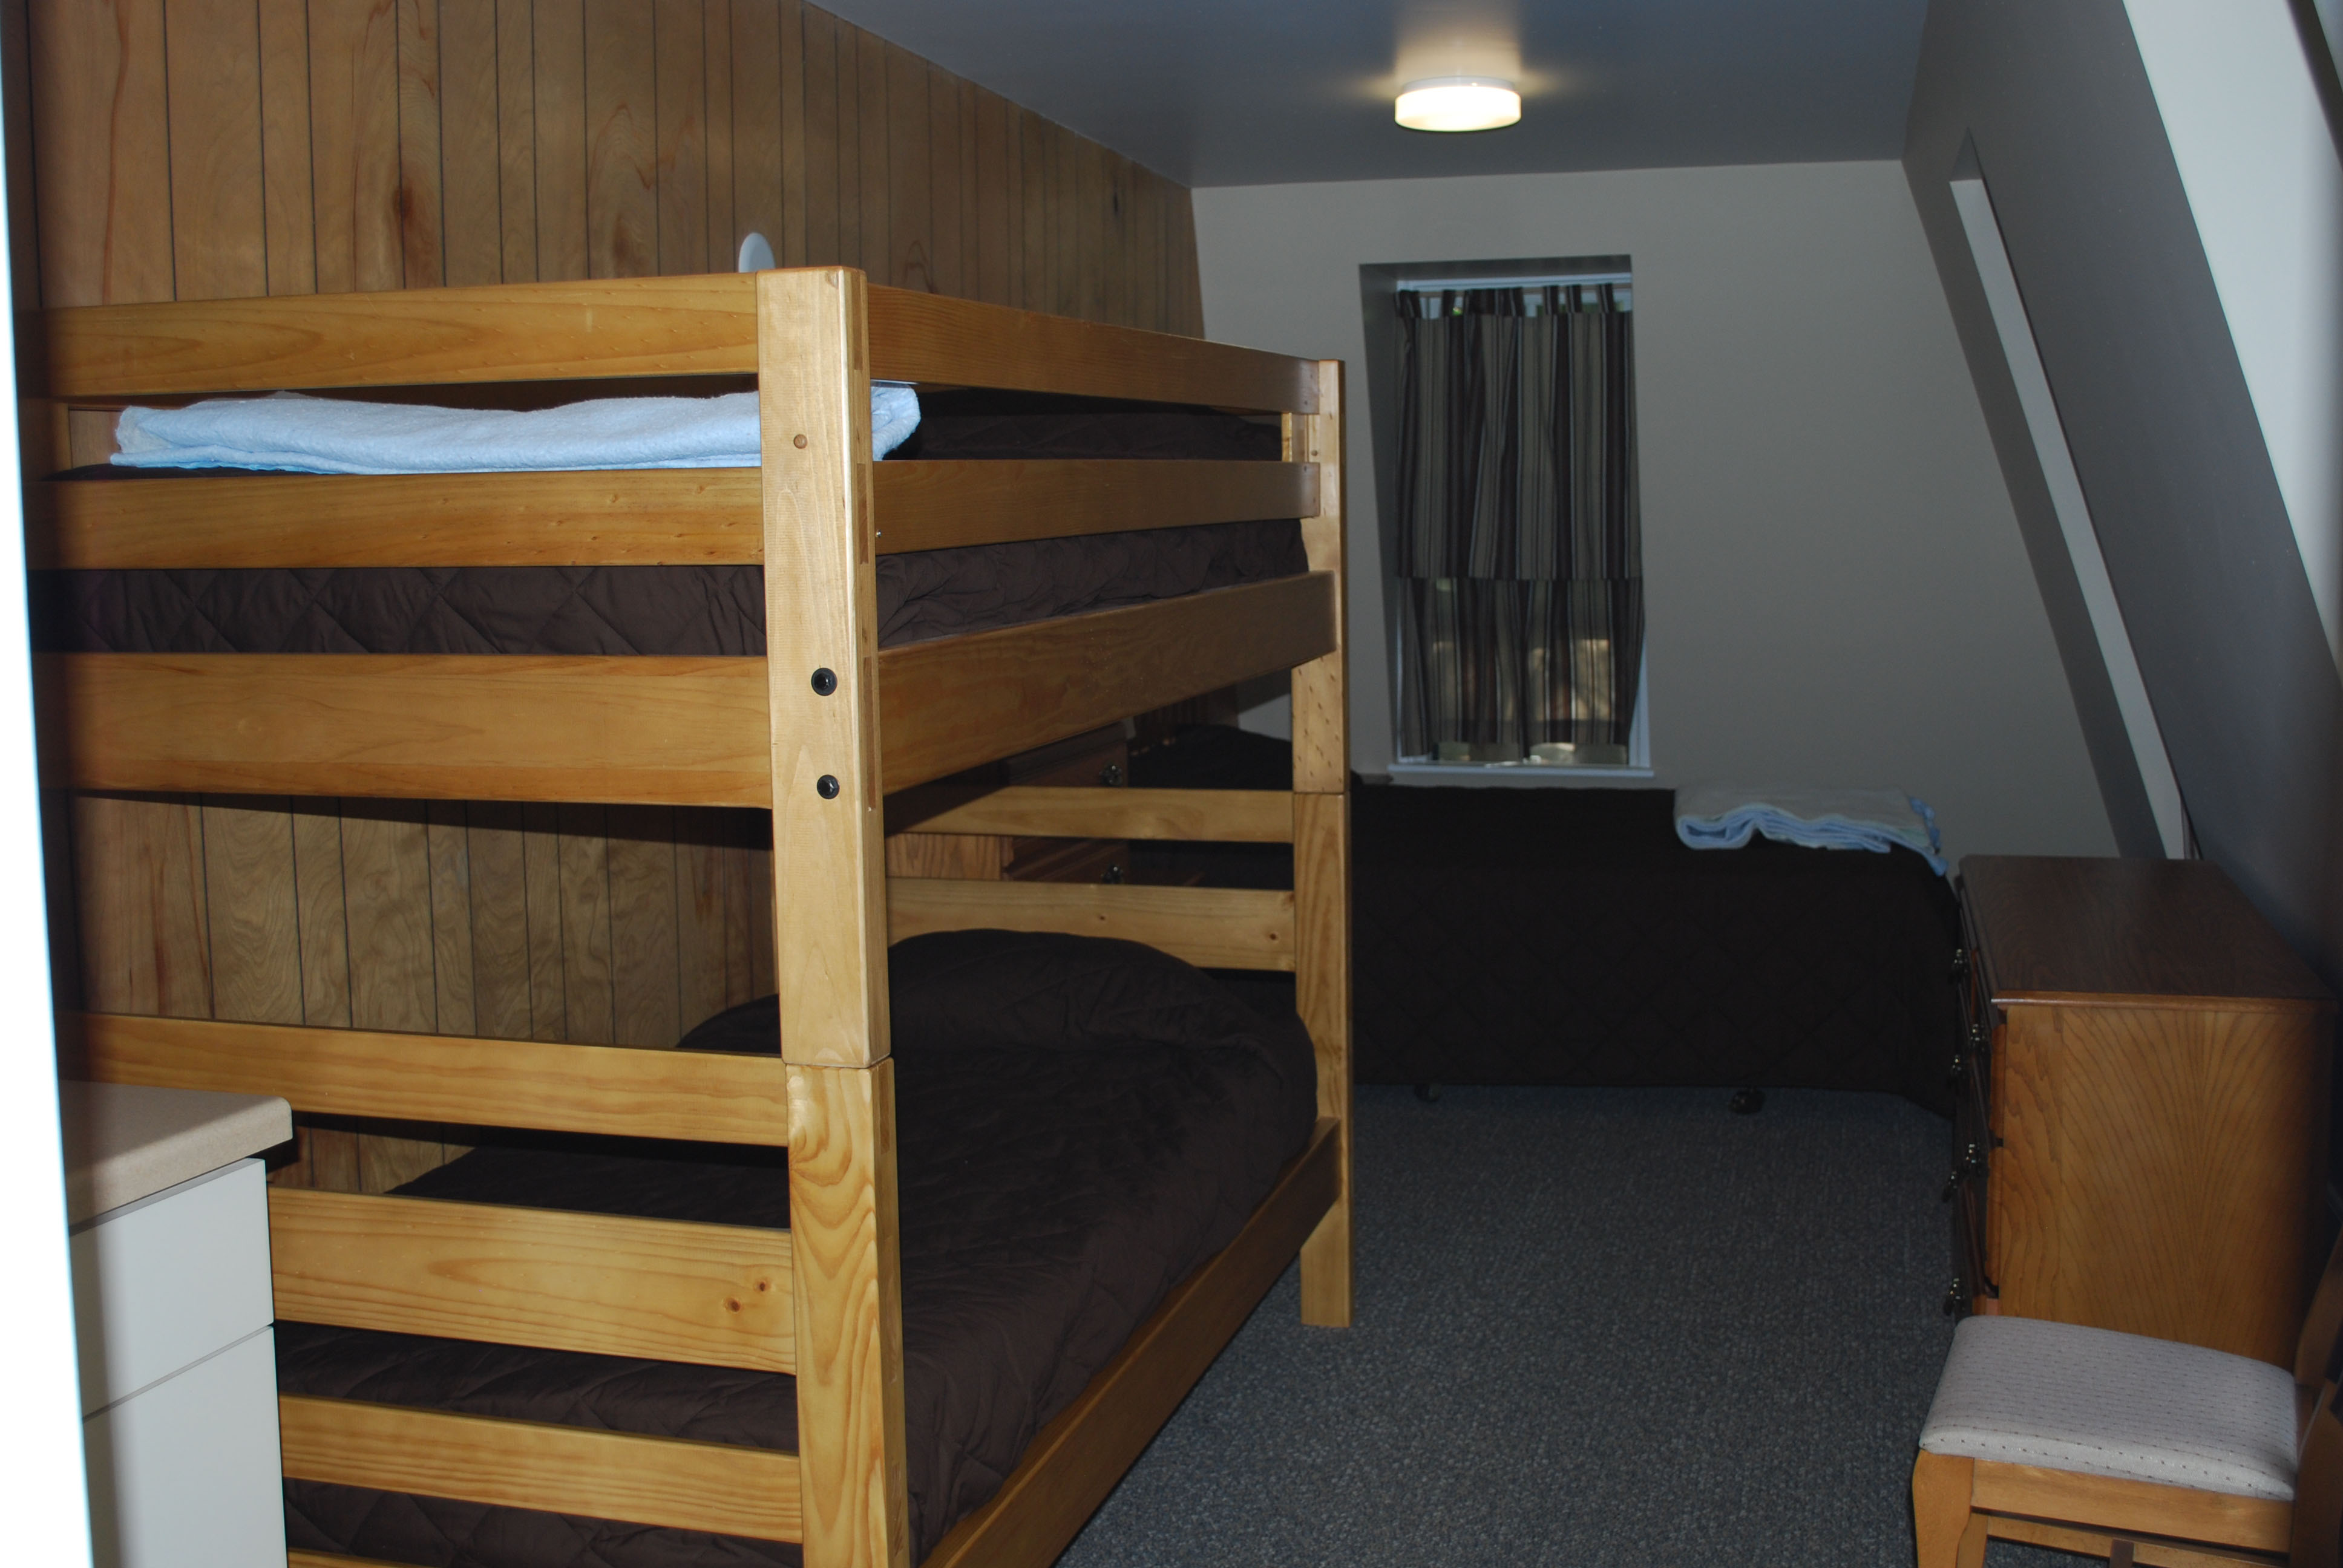 Inside of inn room with bunkbeds